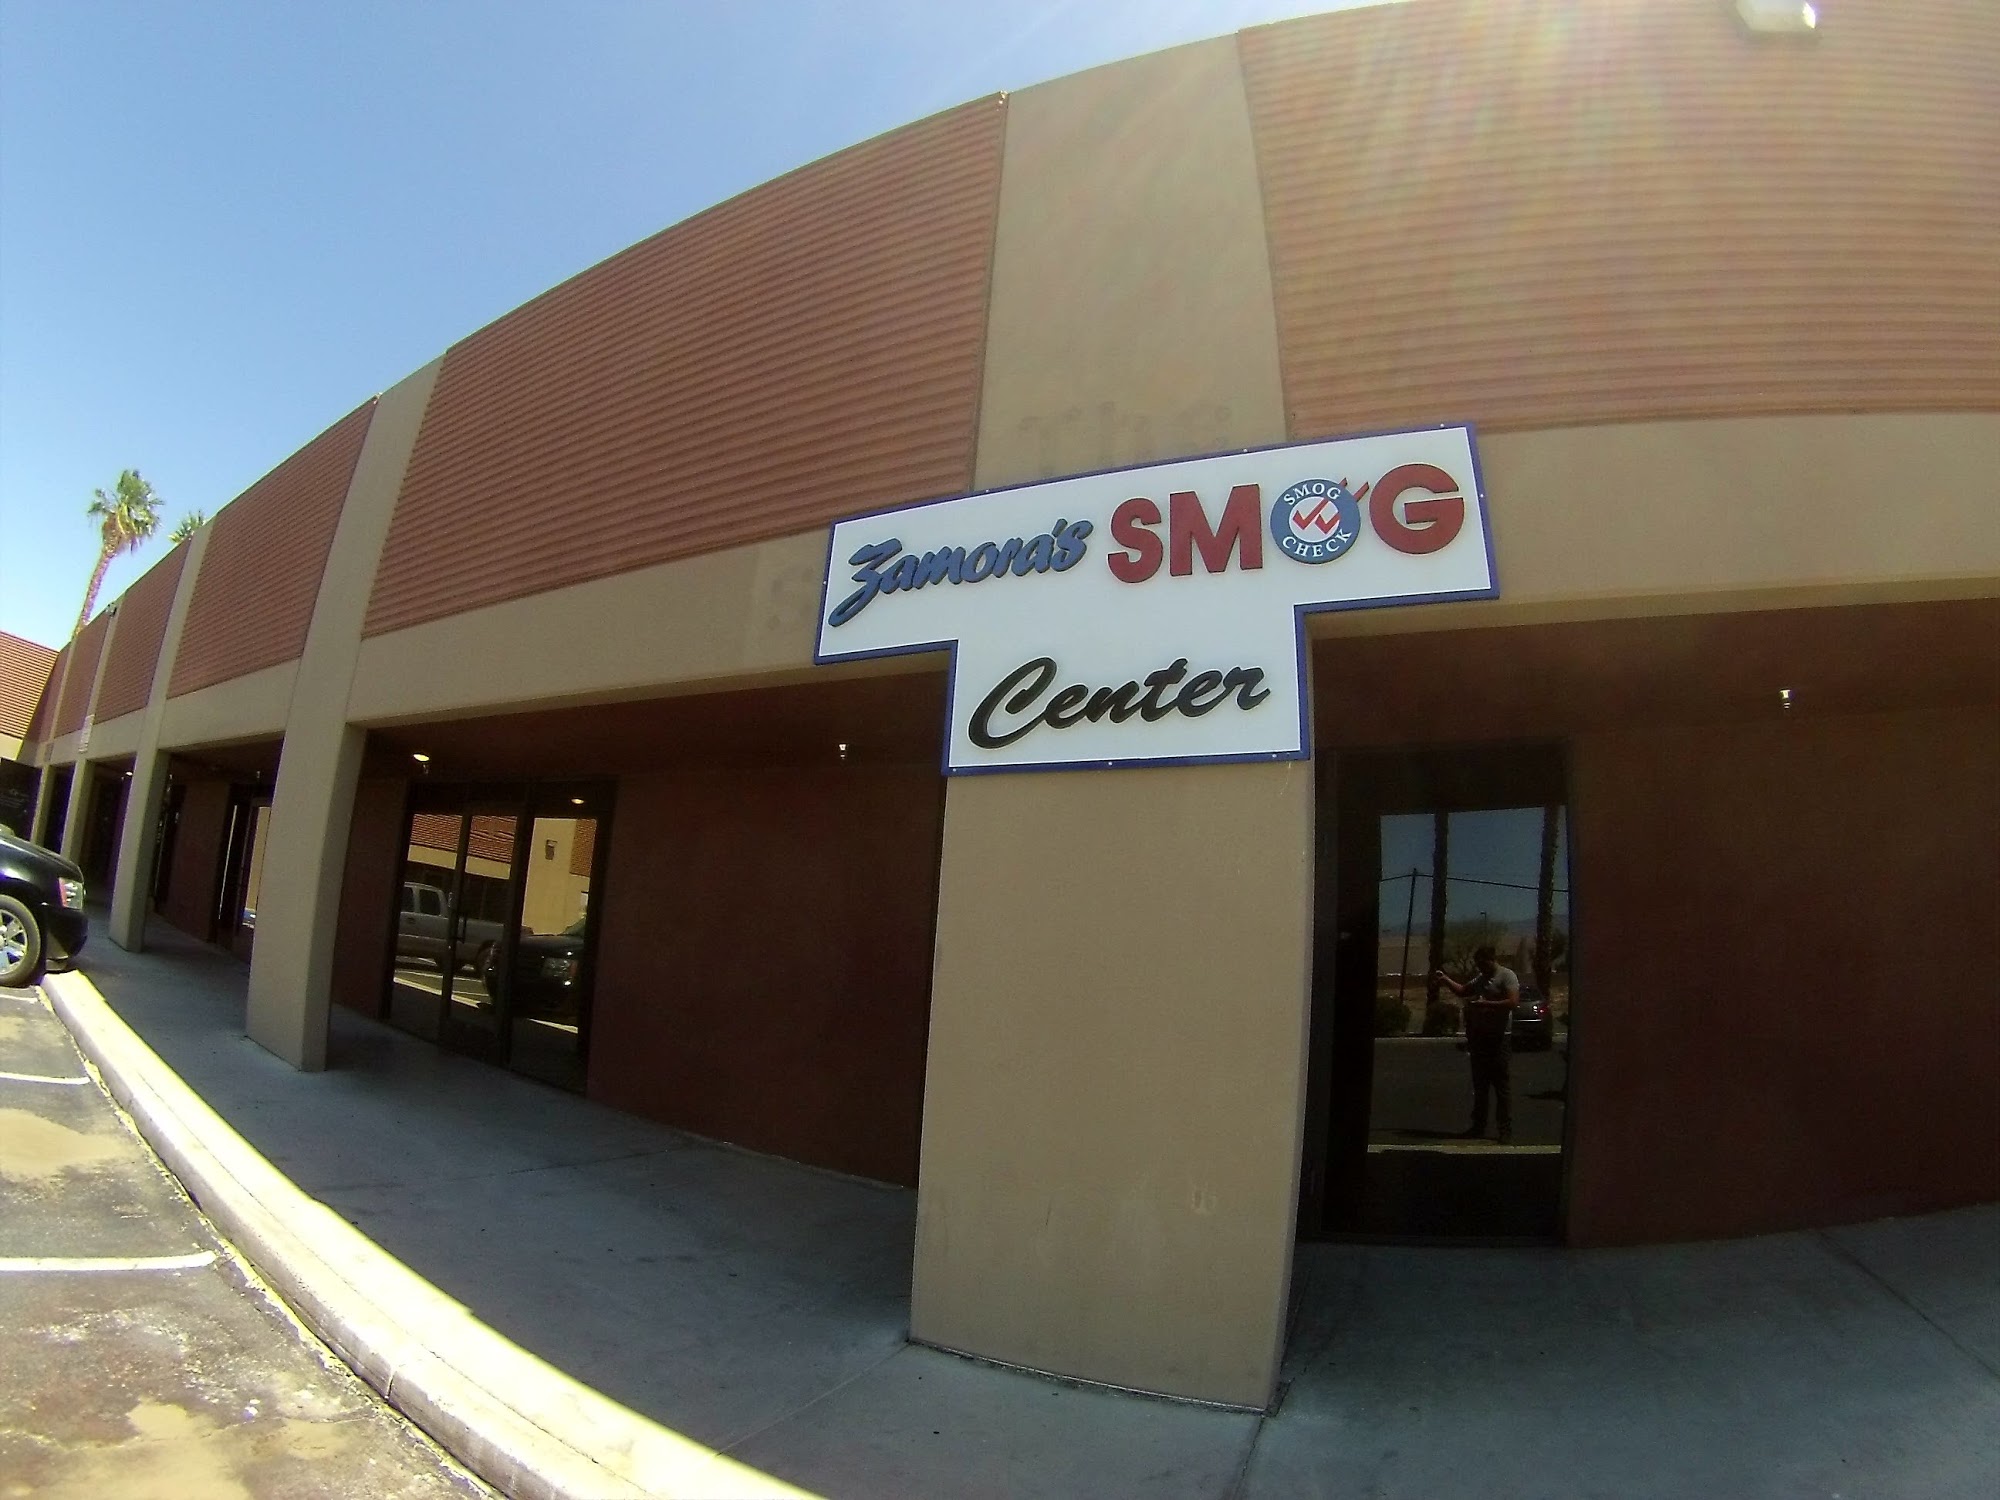 Zamora's Smog Center